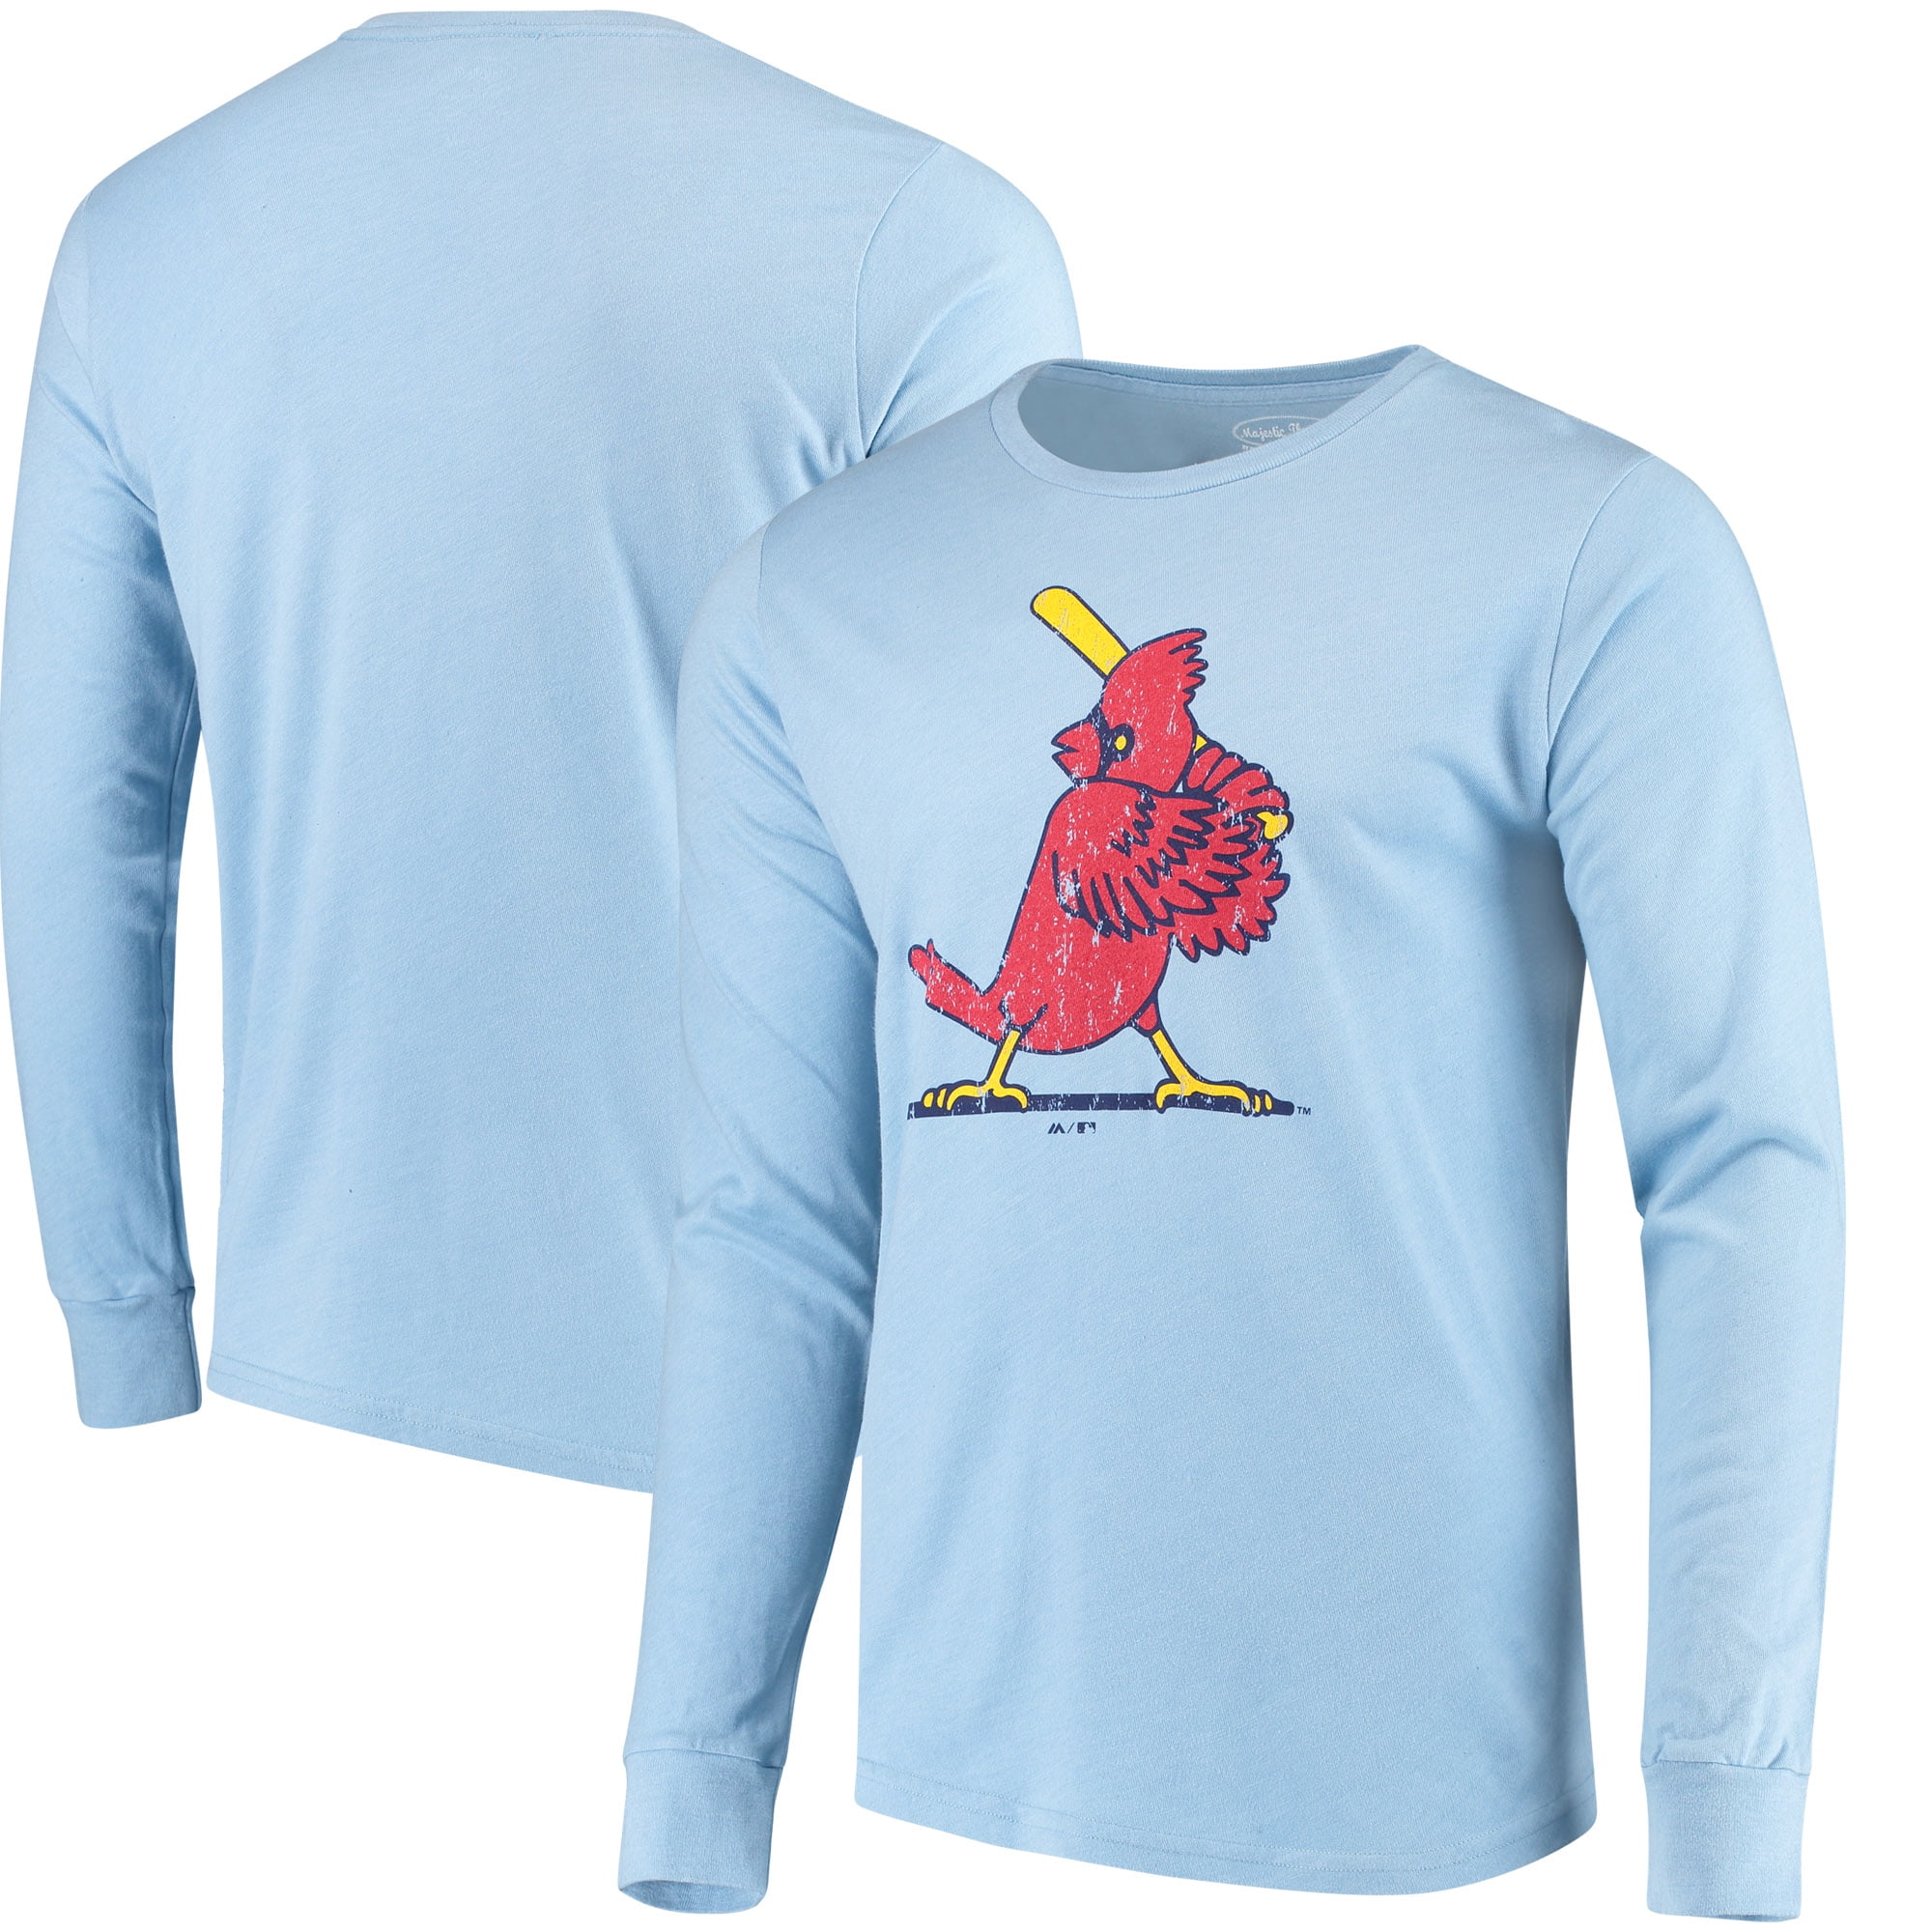 light blue cardinals shirt